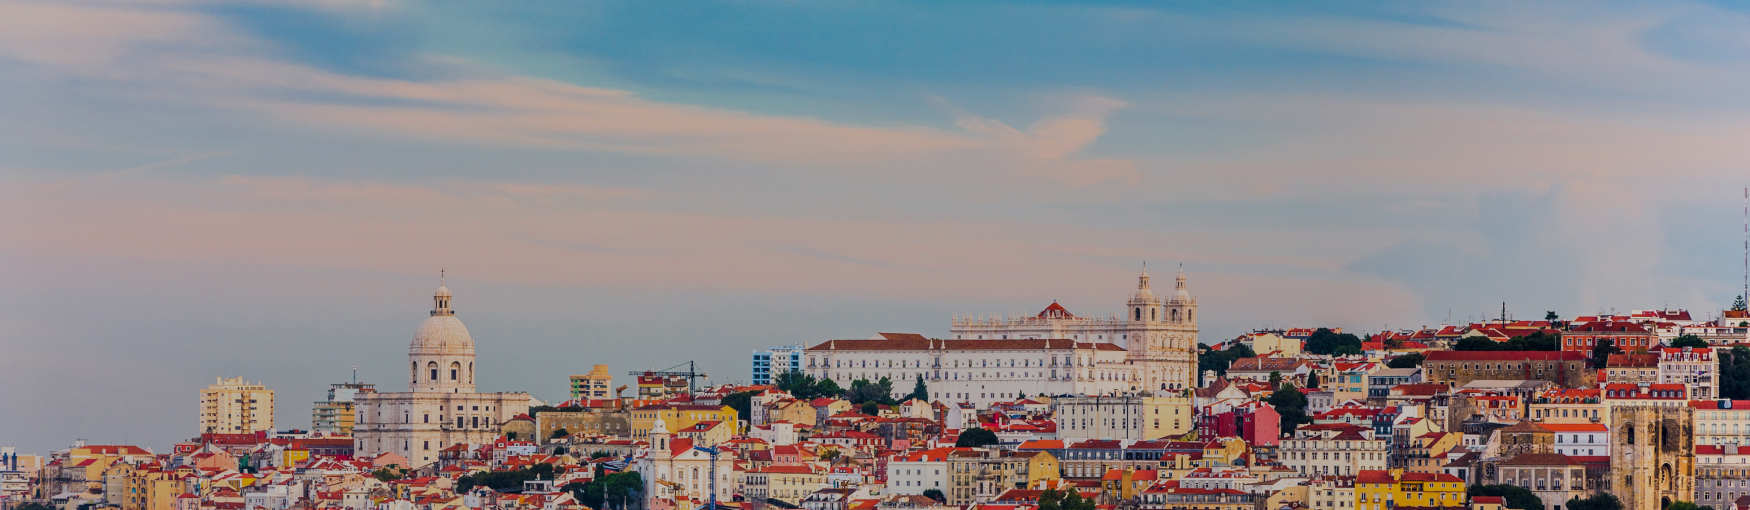 Lizbona - wakacje w Portugalii 